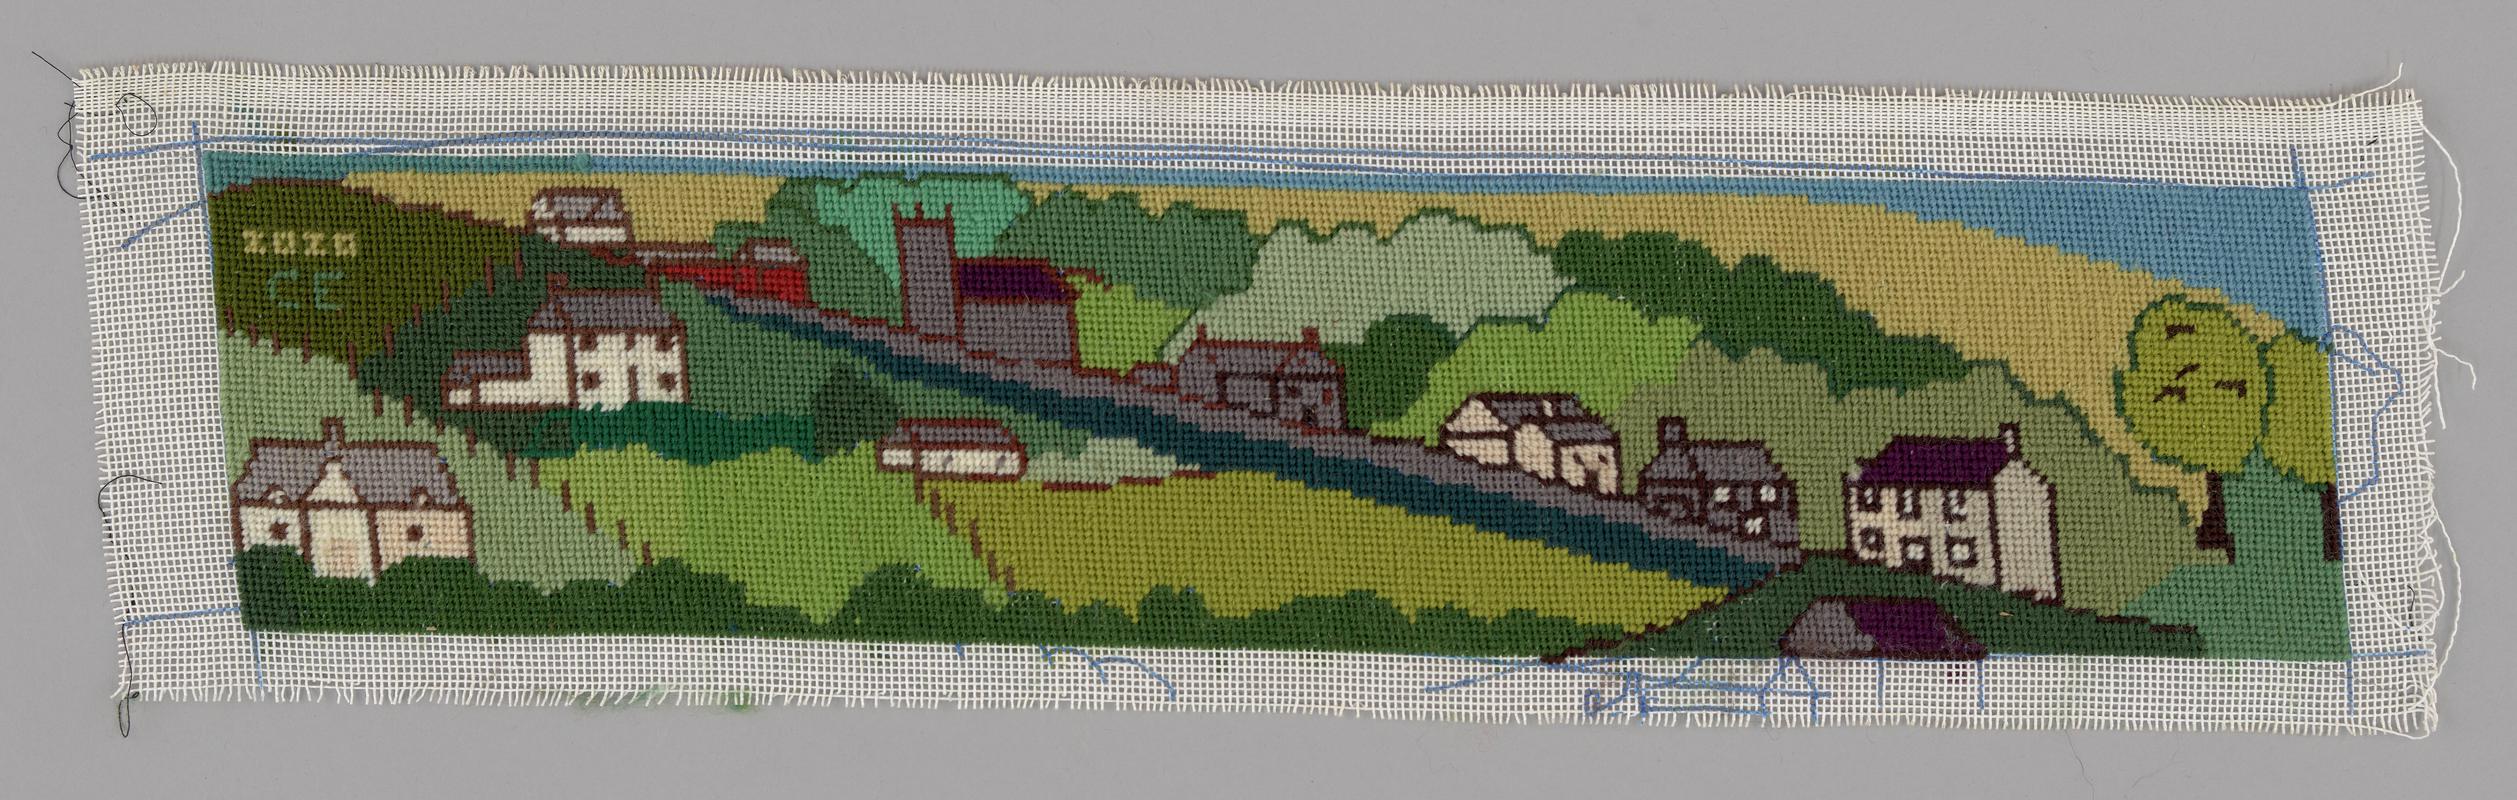 Needlework picture of Llanddeiniol village by Cathy Evans, 2020.